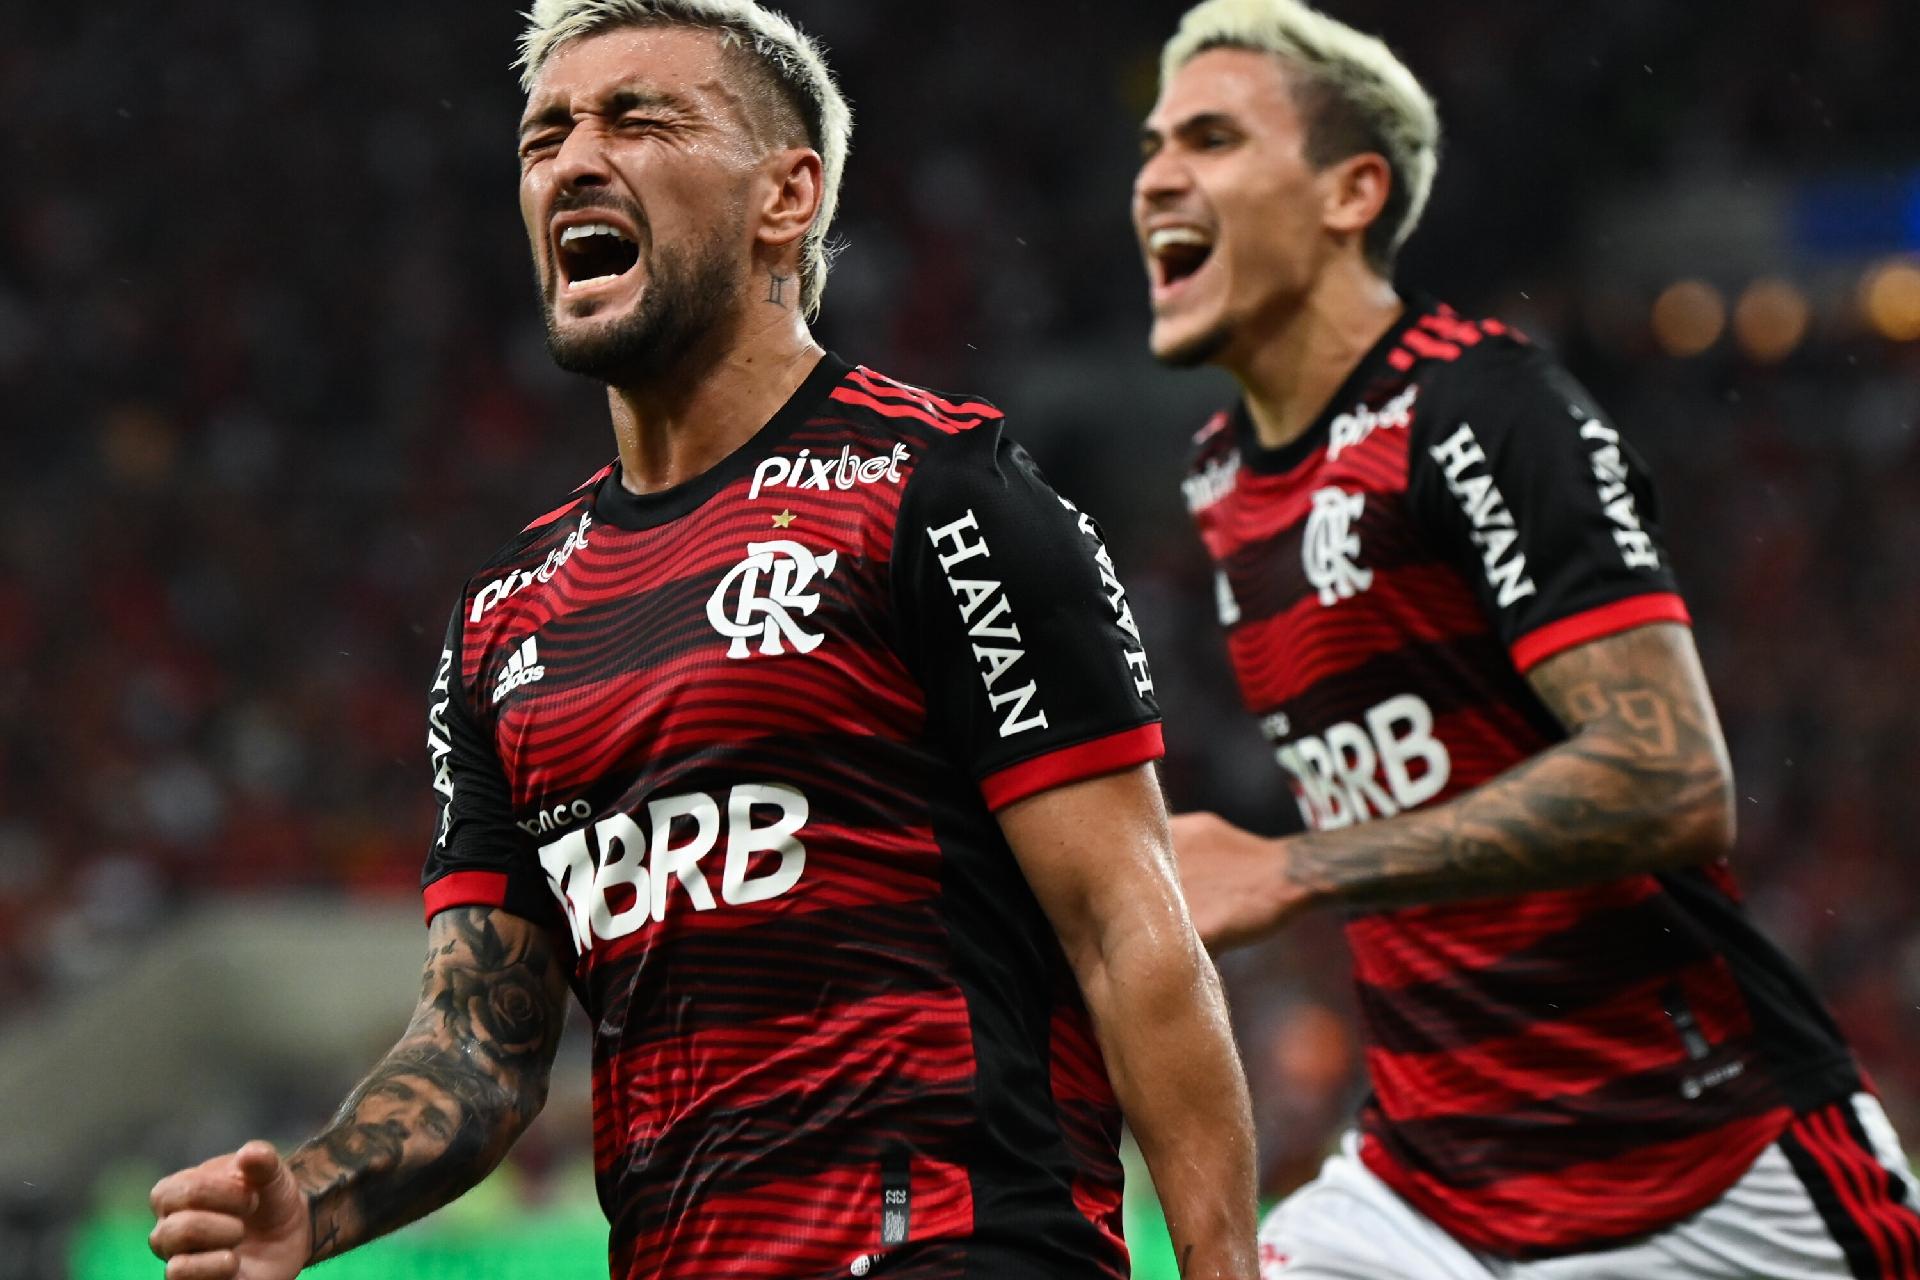 São Paulo vence Flamengo na partida de ida da final da Copa do Brasil;  confira detalhes do jogo - Folha PE